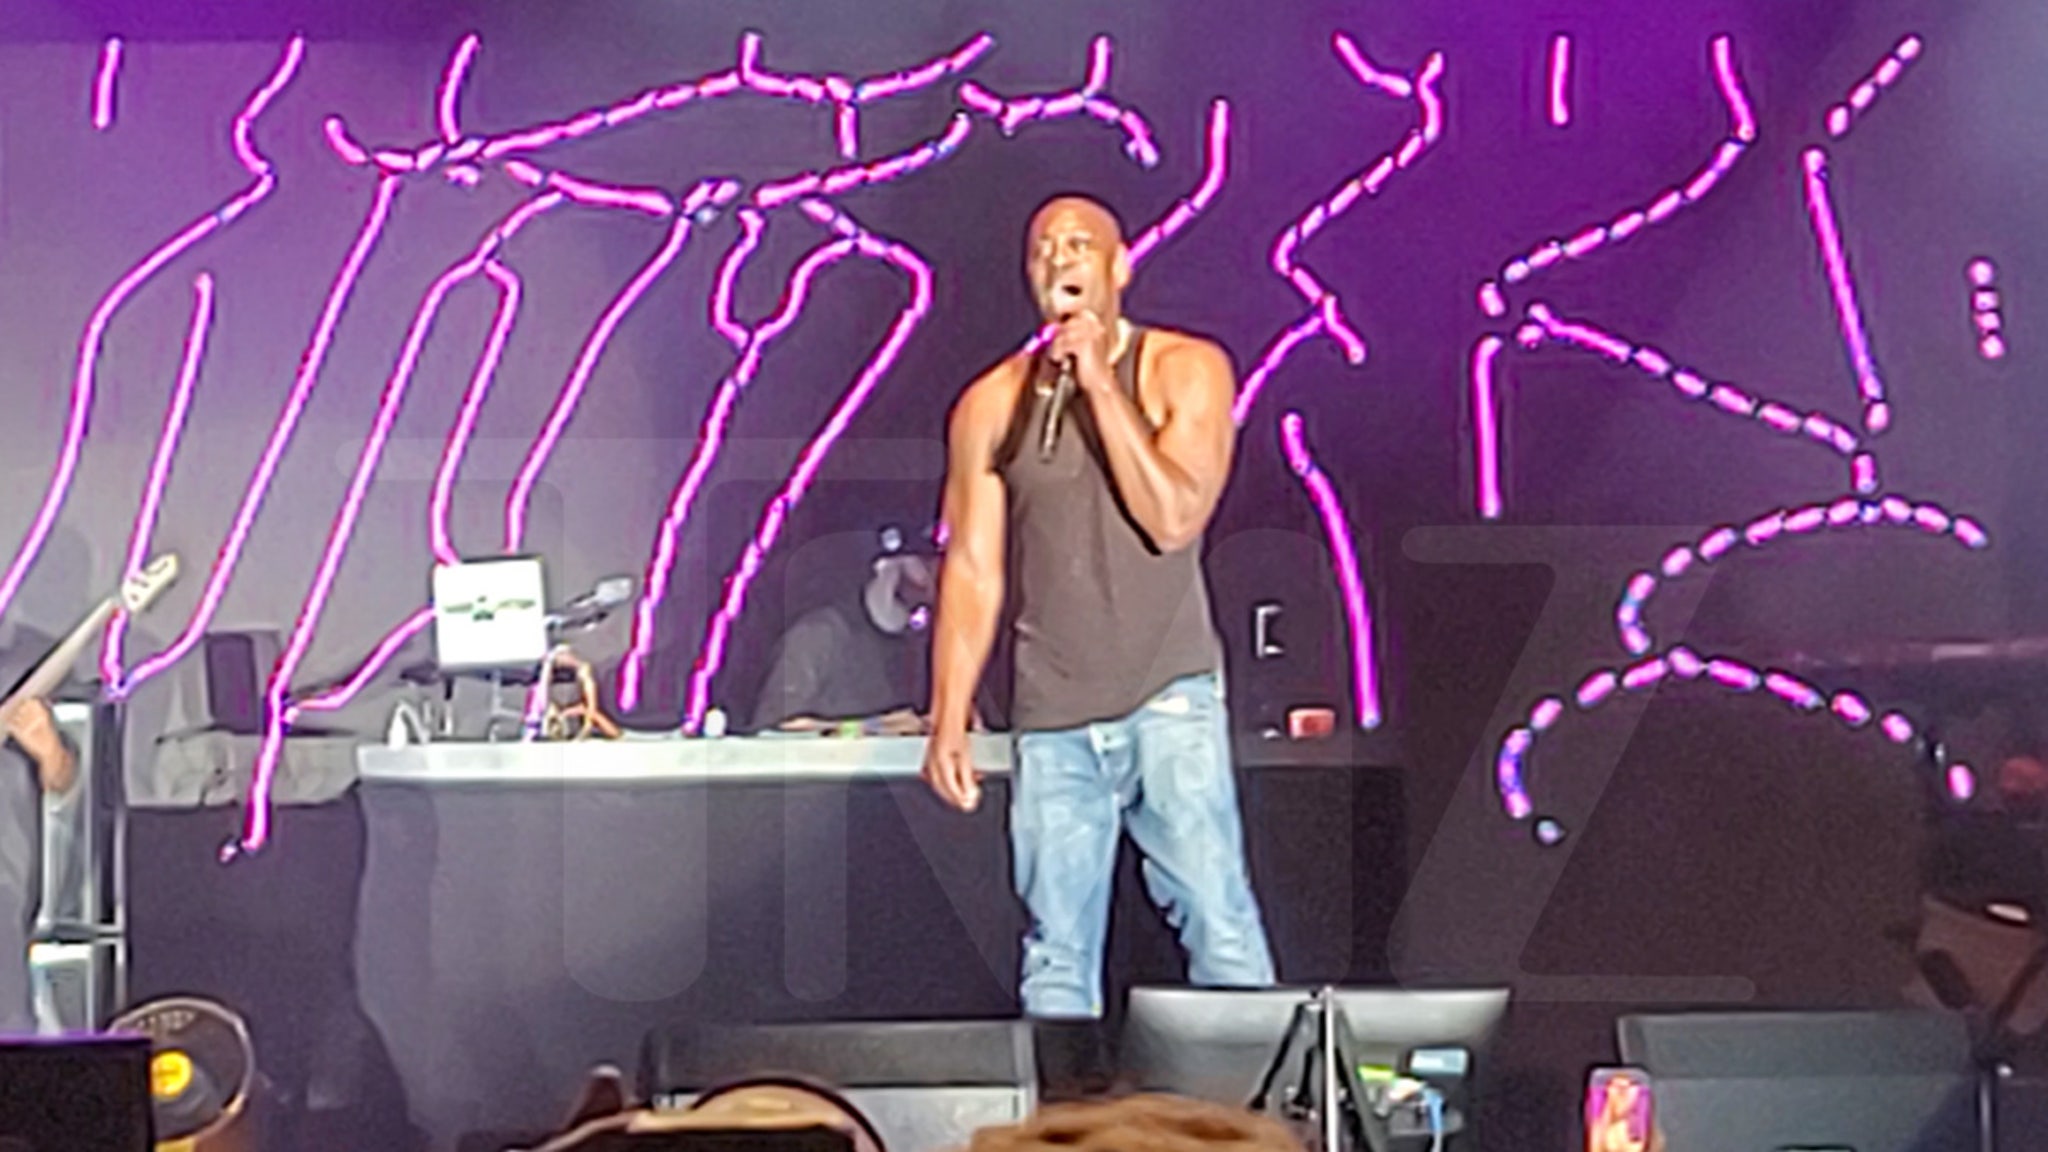 يغني Dave Chappelle في مهرجان أوهايو للموسيقى بعد مجموعة Snoop Dogg